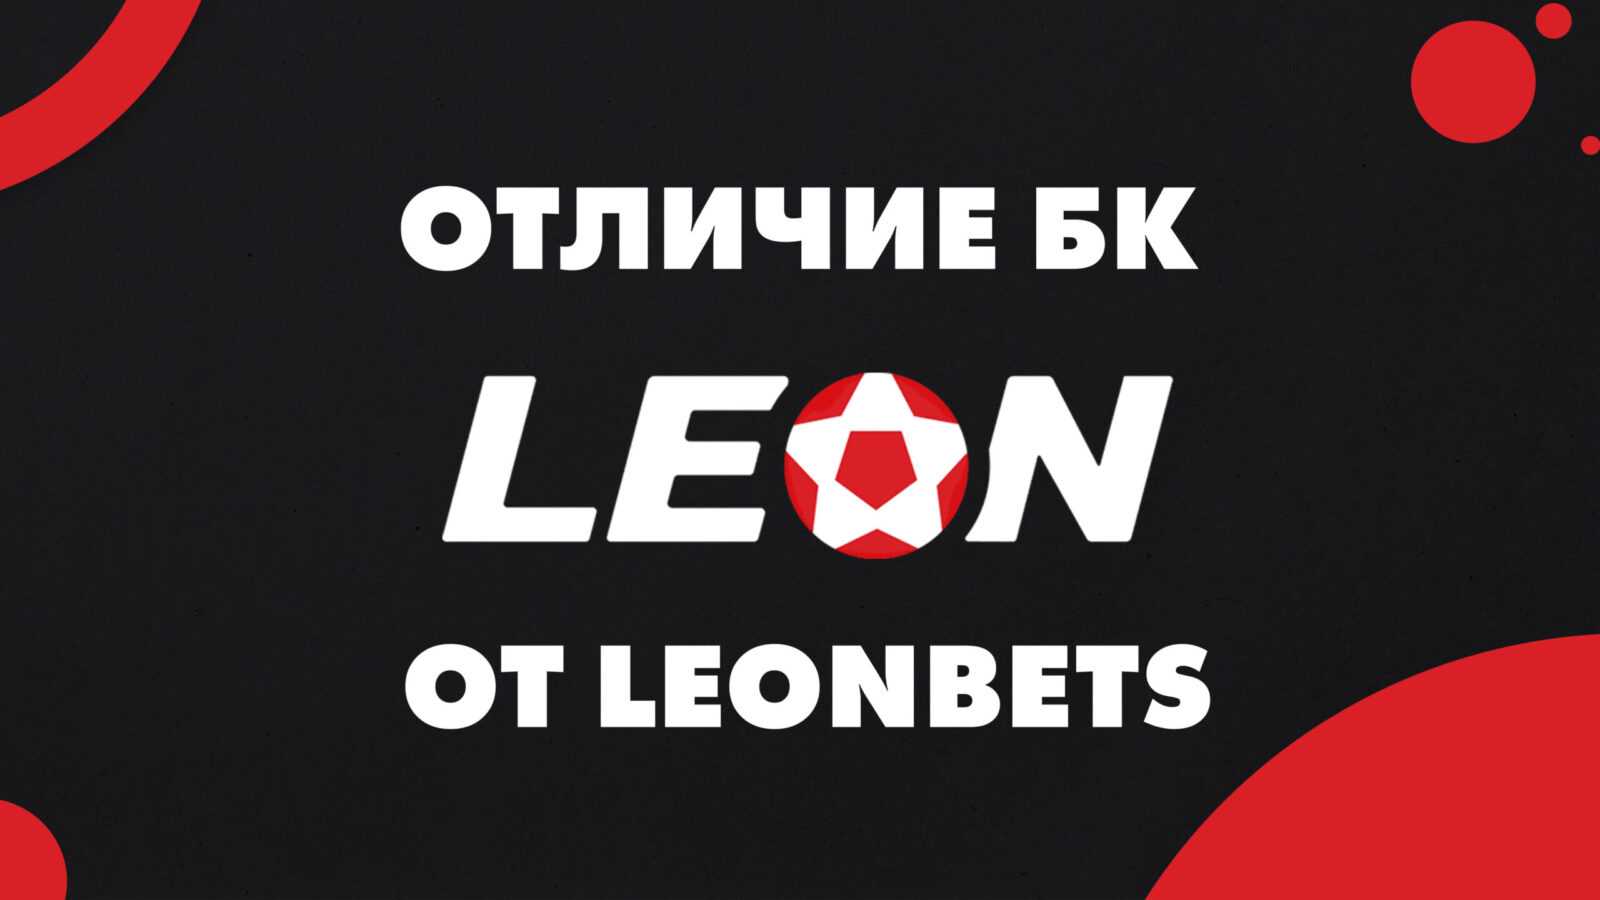 Leonbets official site bk leon ru